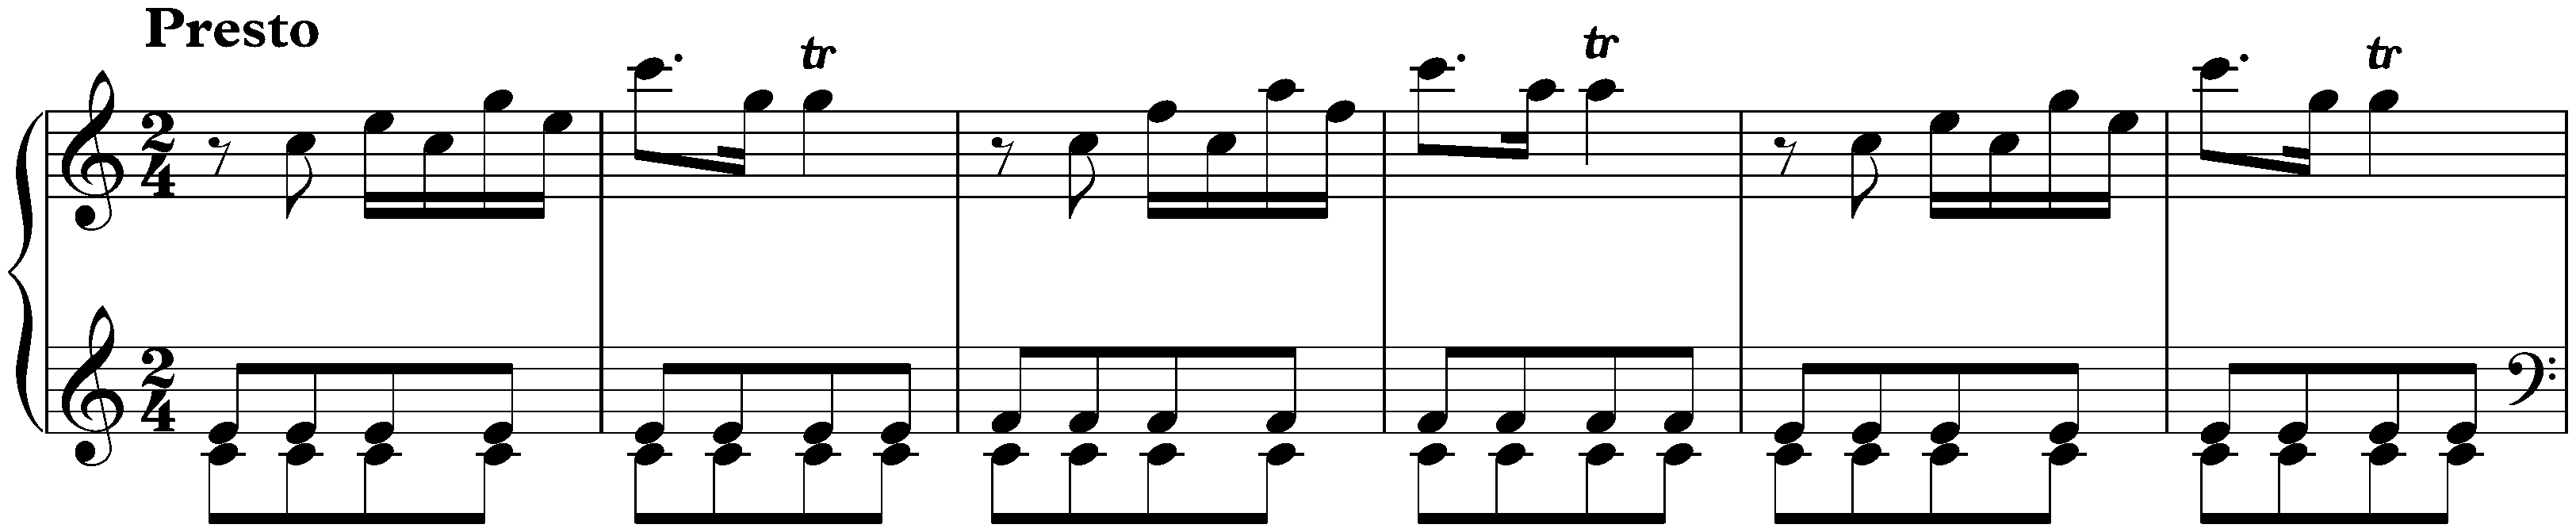 Sonata in C major, Hob. XVI:10; 3. Finale: Presto